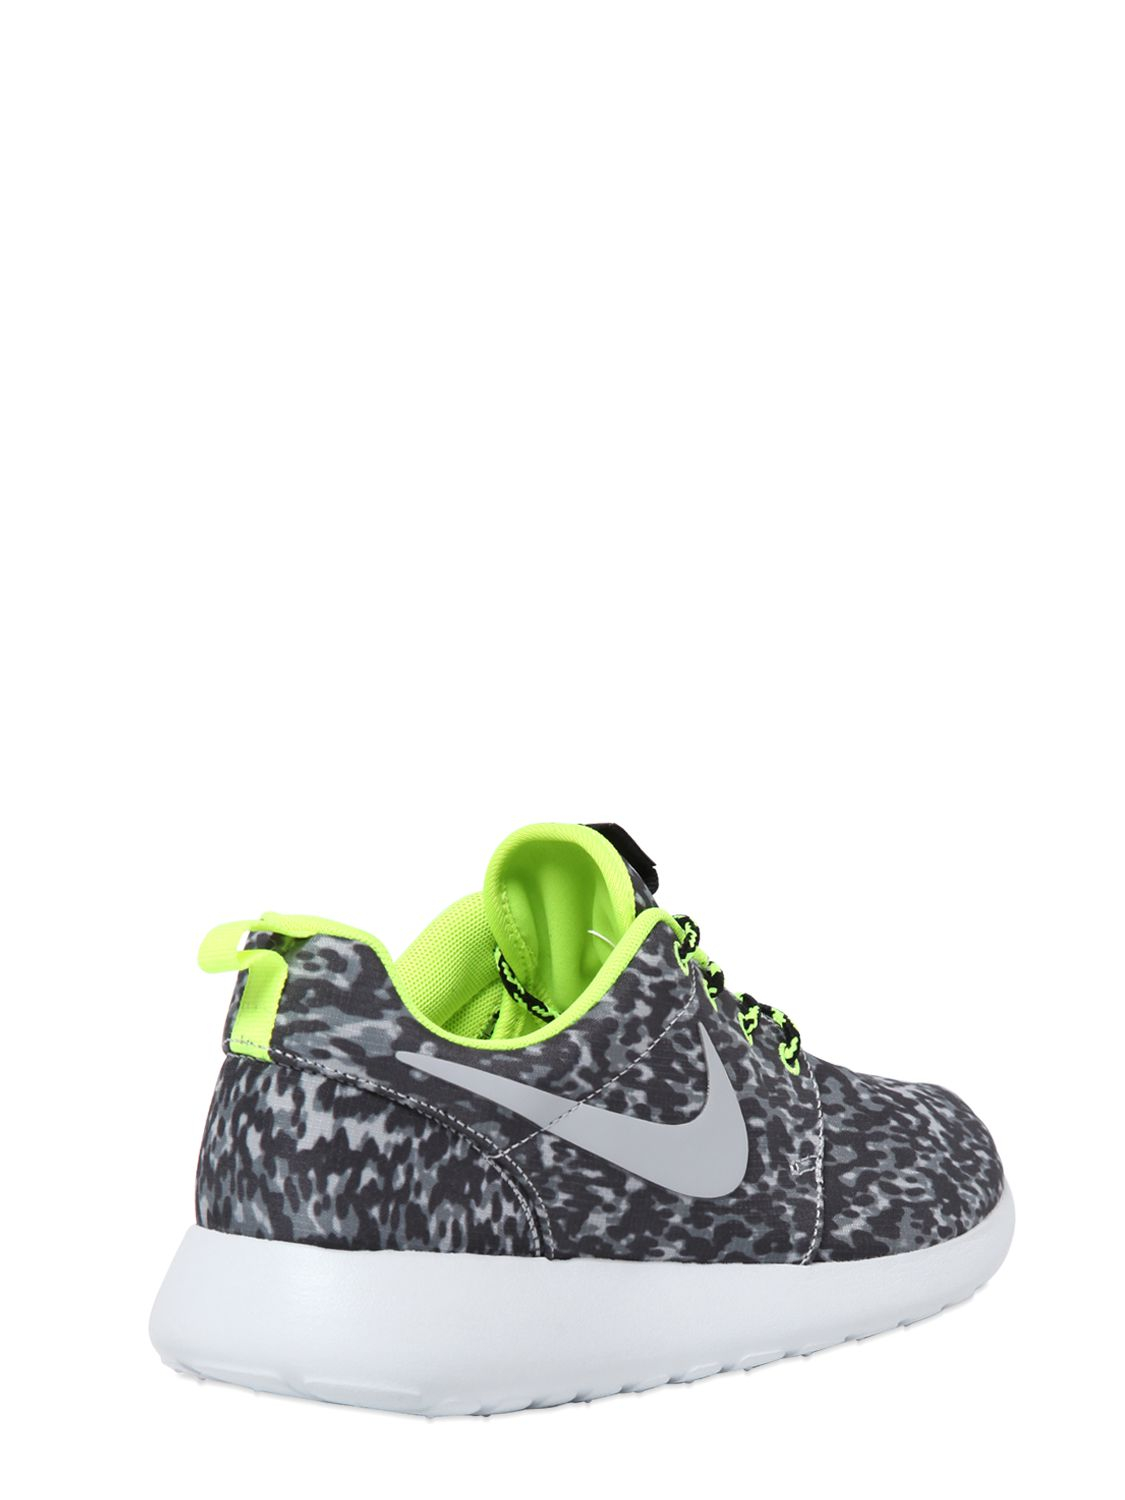 Overleg mode Communistisch Nike Roshe Run Leopard Print Running Sneakers in Gray | Lyst